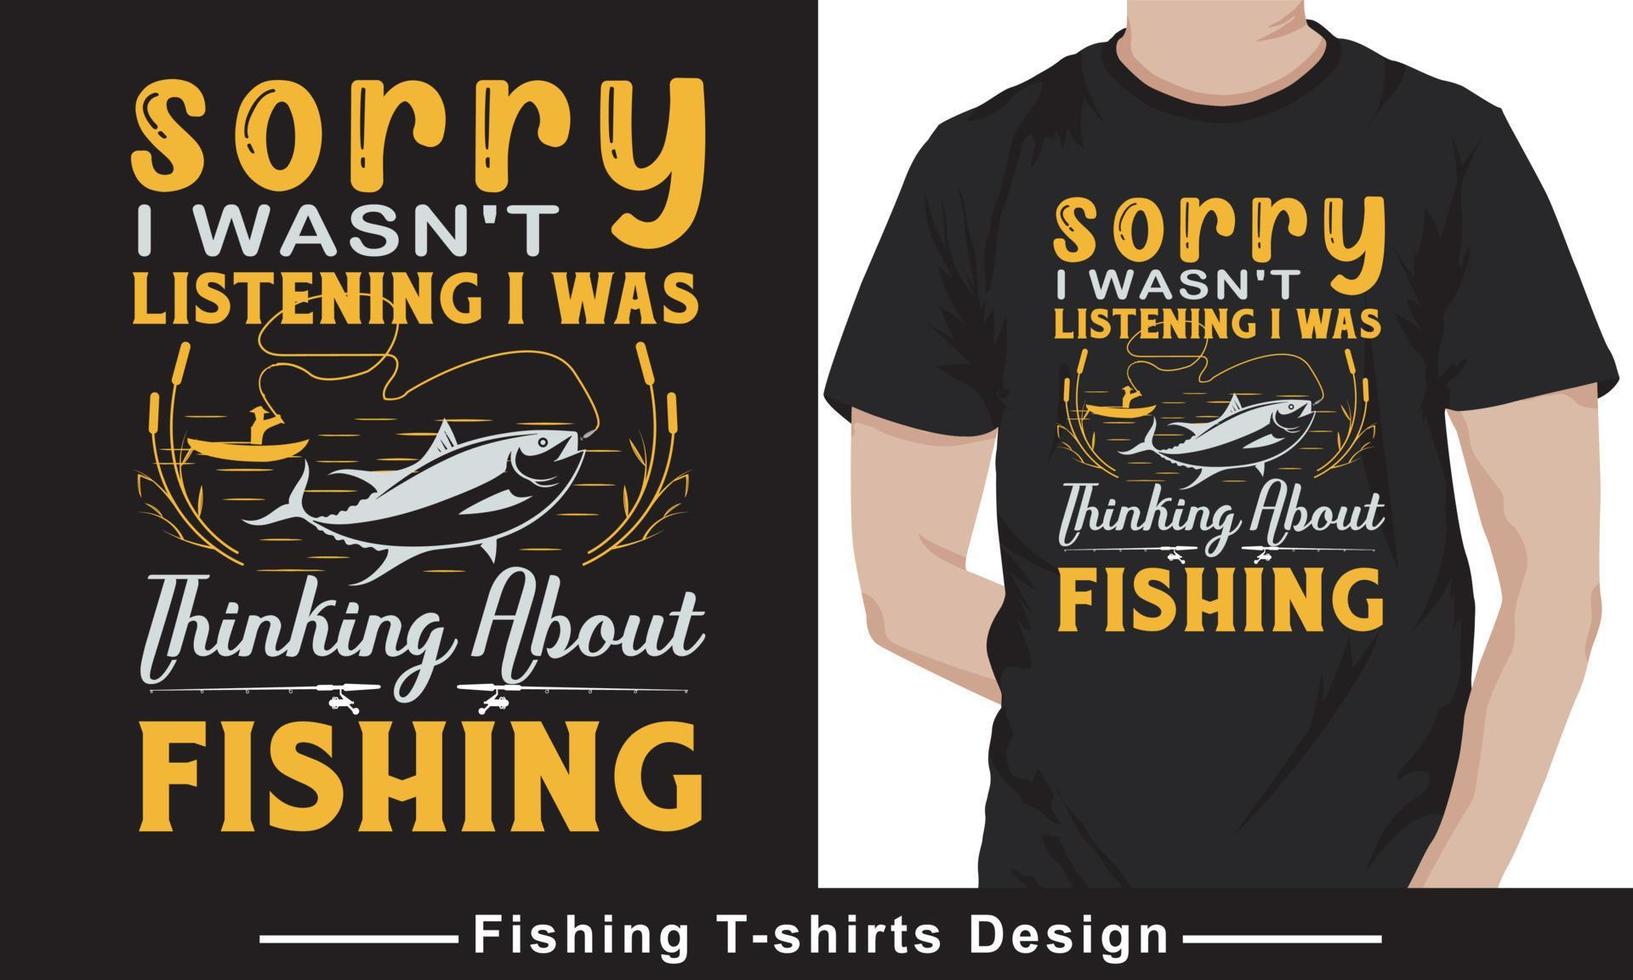 vetor de tipografia de pesca vetor de design de camiseta profissional